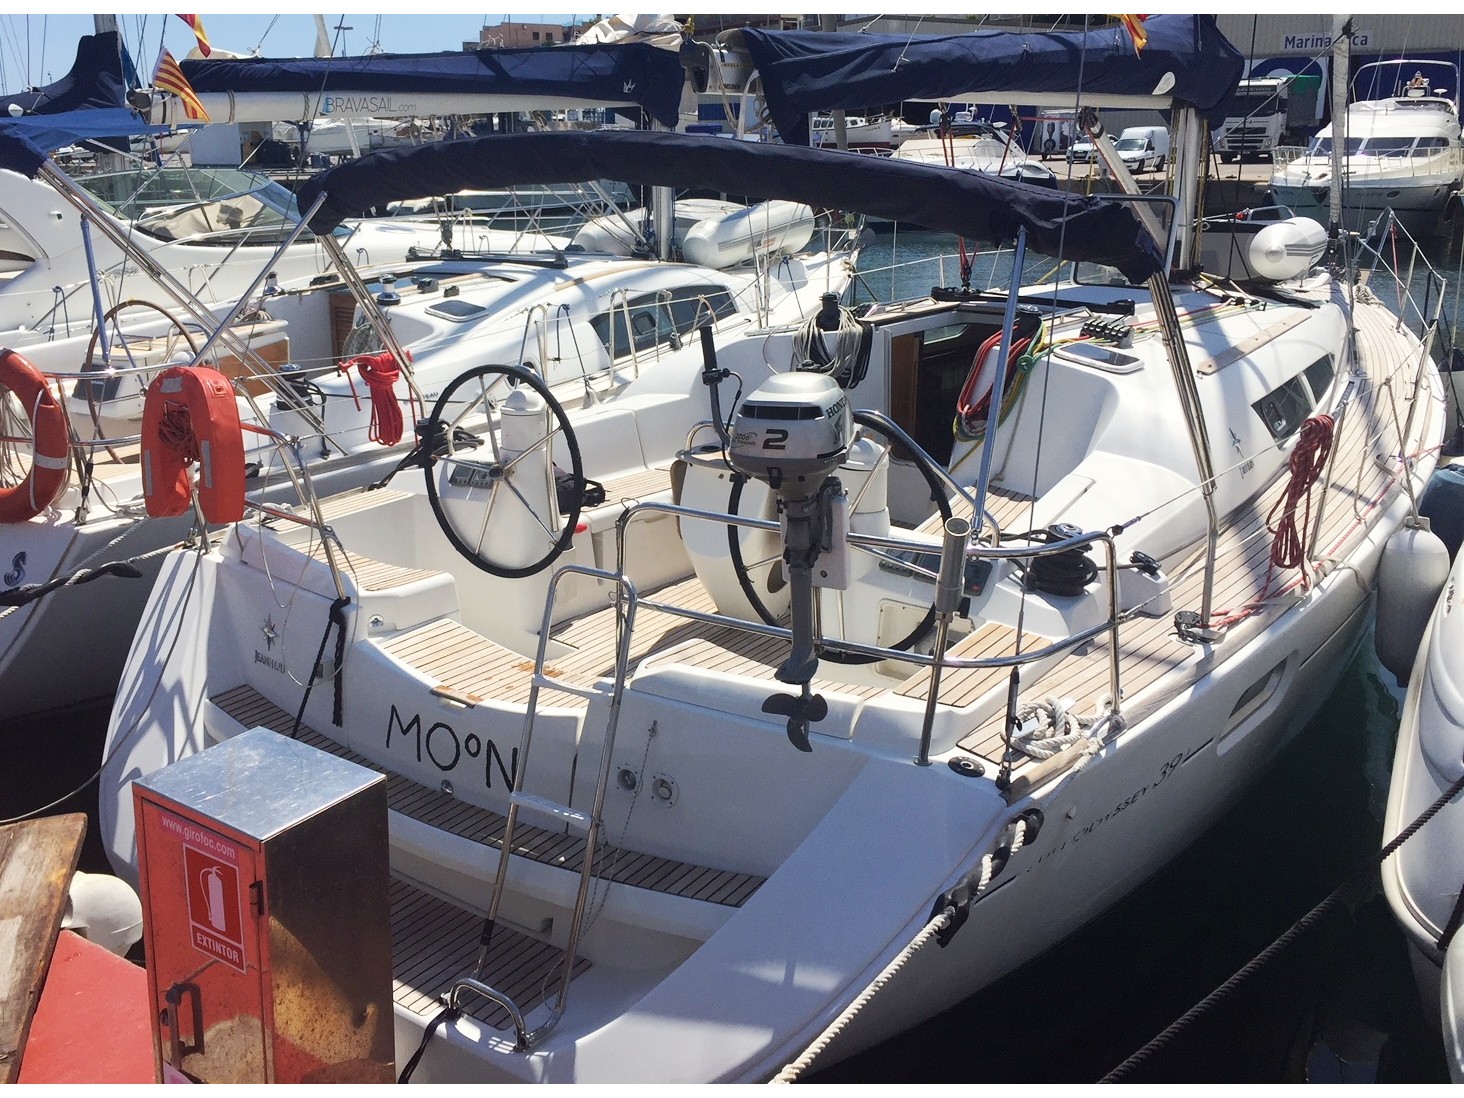 Sun Odyssey 39i - Yacht Charter Palamos & Boat hire in Spain Catalonia Costa Brava Girona Palamos Palamos 2